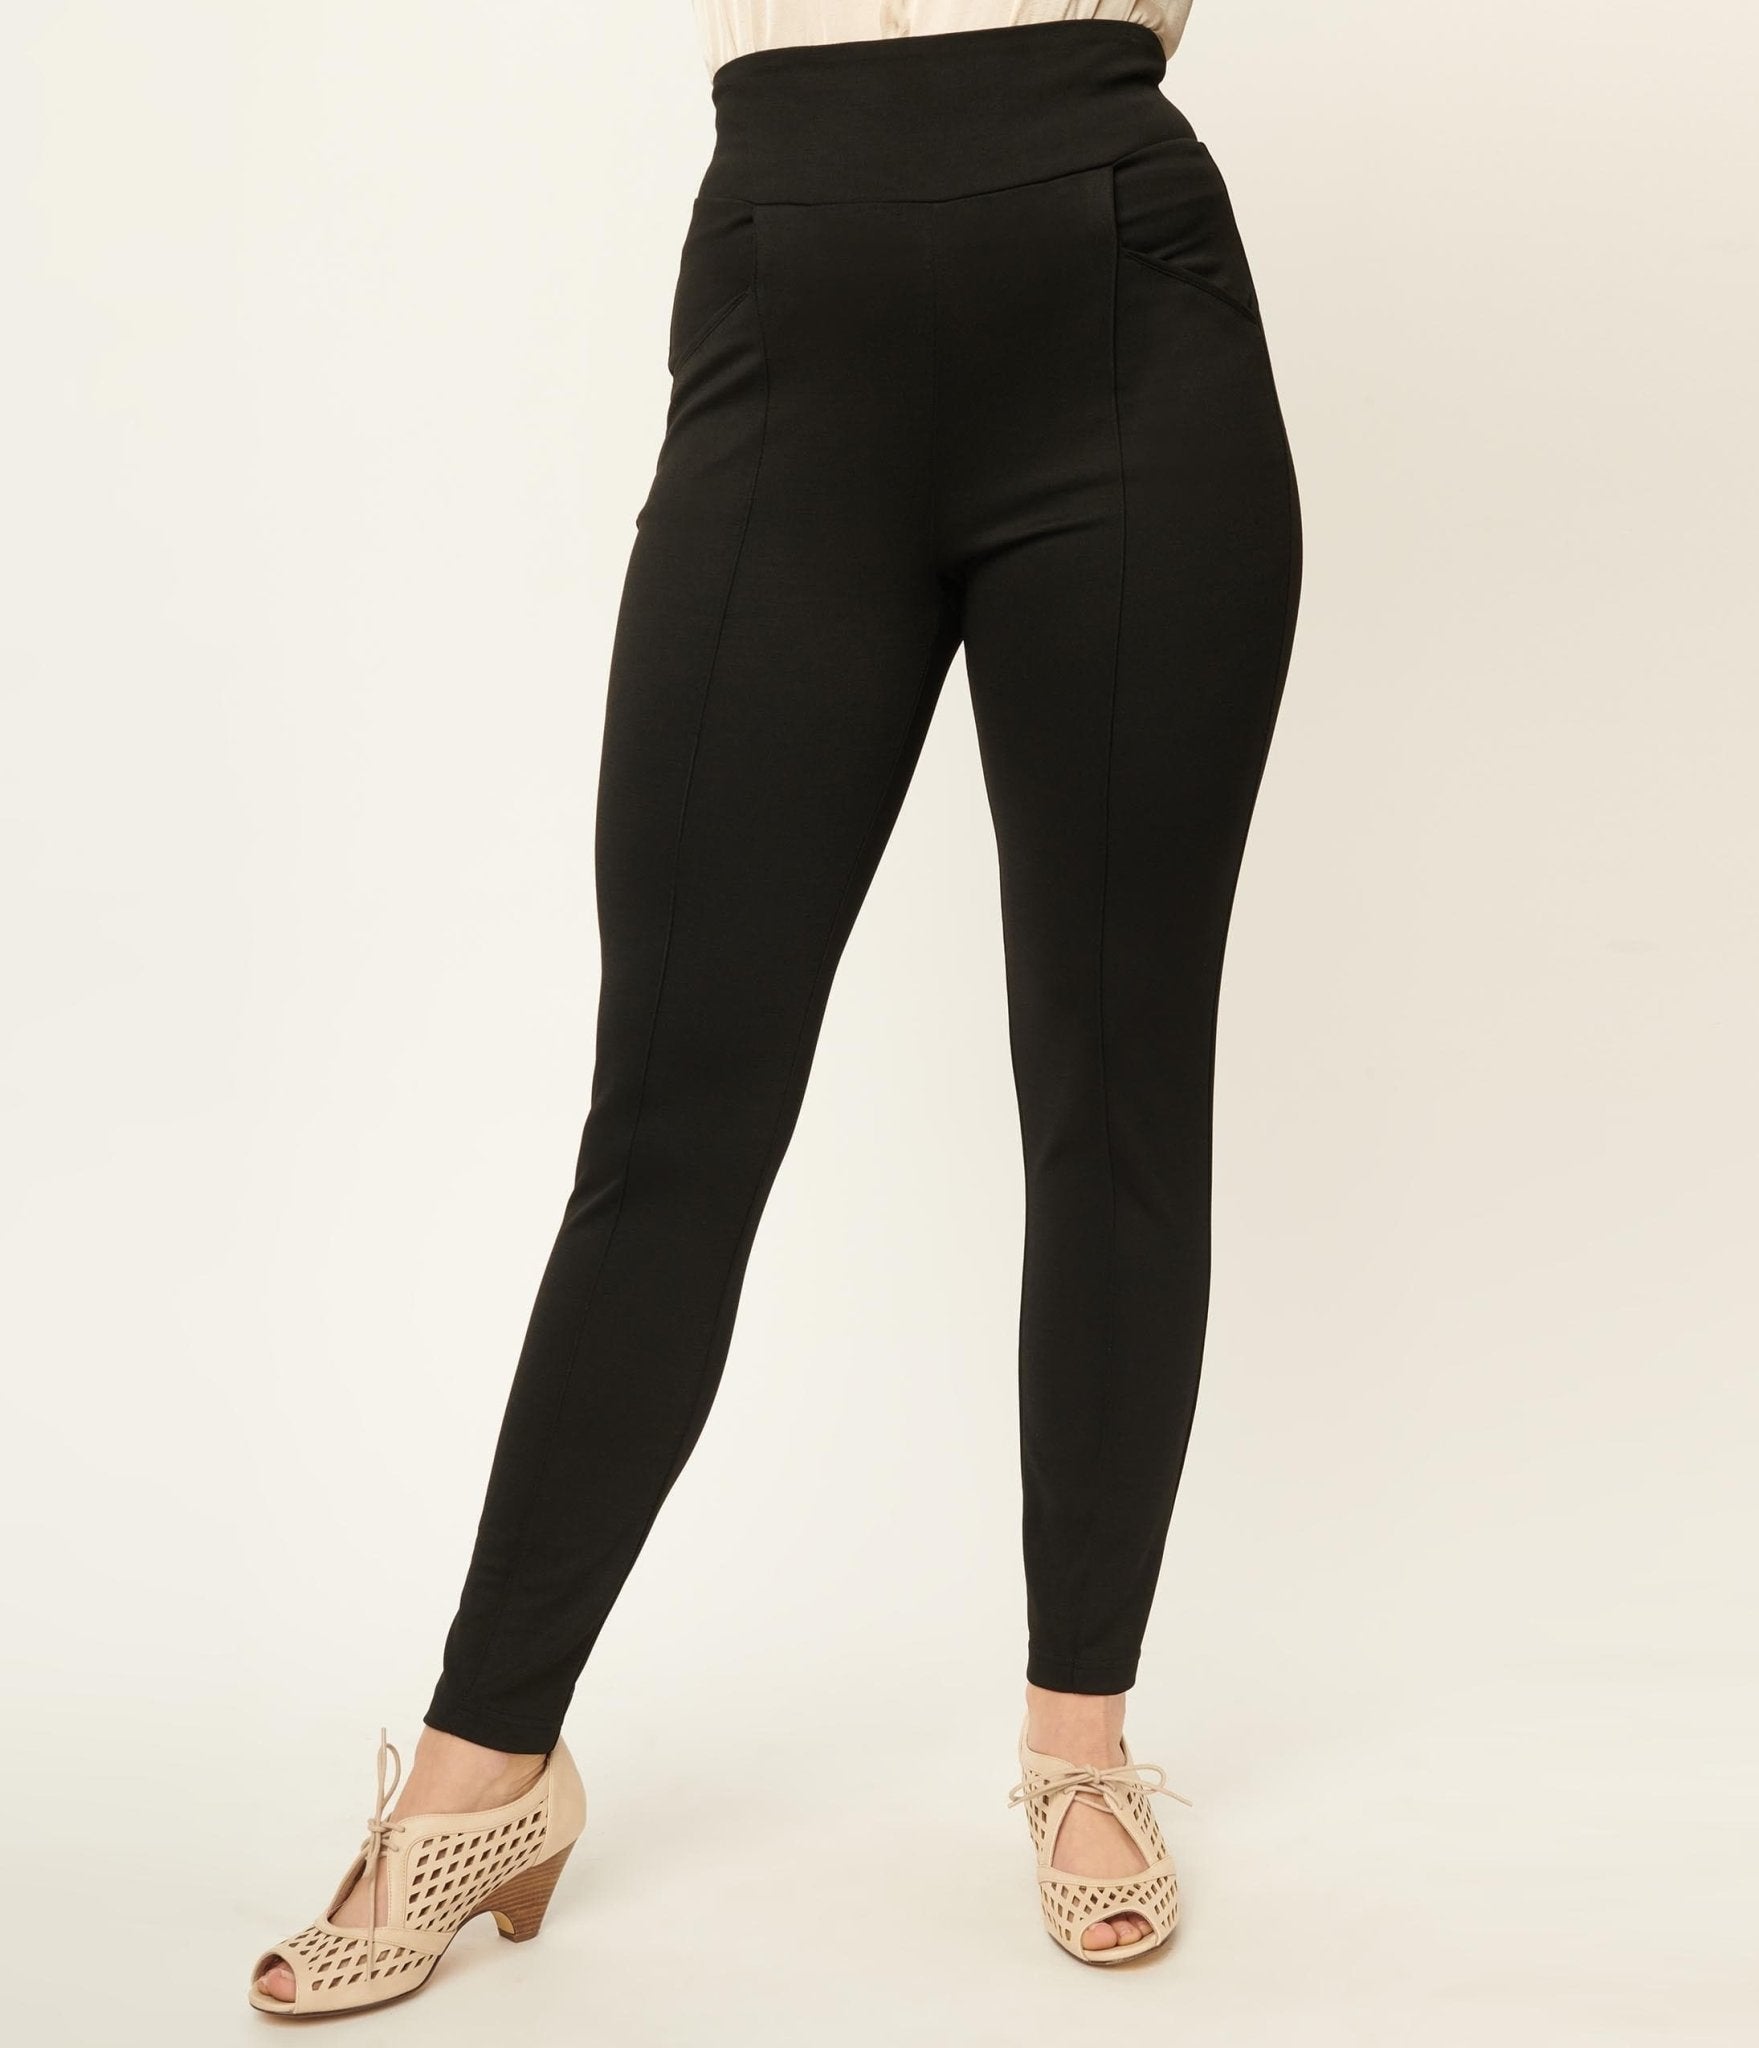 Buy RIBOOM Women's Ponte Skinny Legging Work Pants with Wide